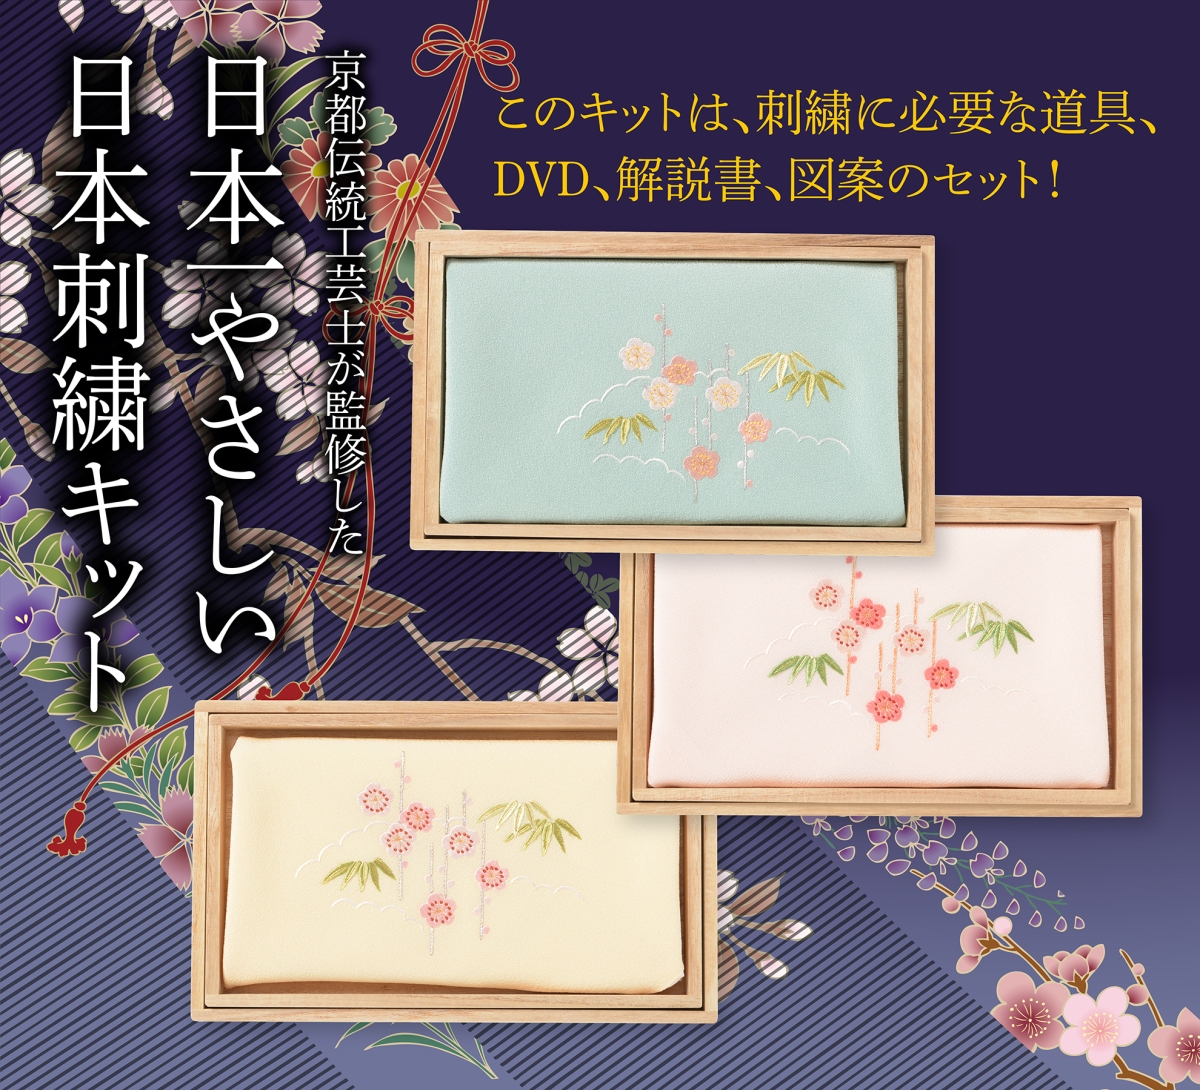 京都伝統工芸士が監修した日本一やさしい日本刺繍キット。このキットは、刺繍に必要な道具、DVD、解説書、図案のセット！